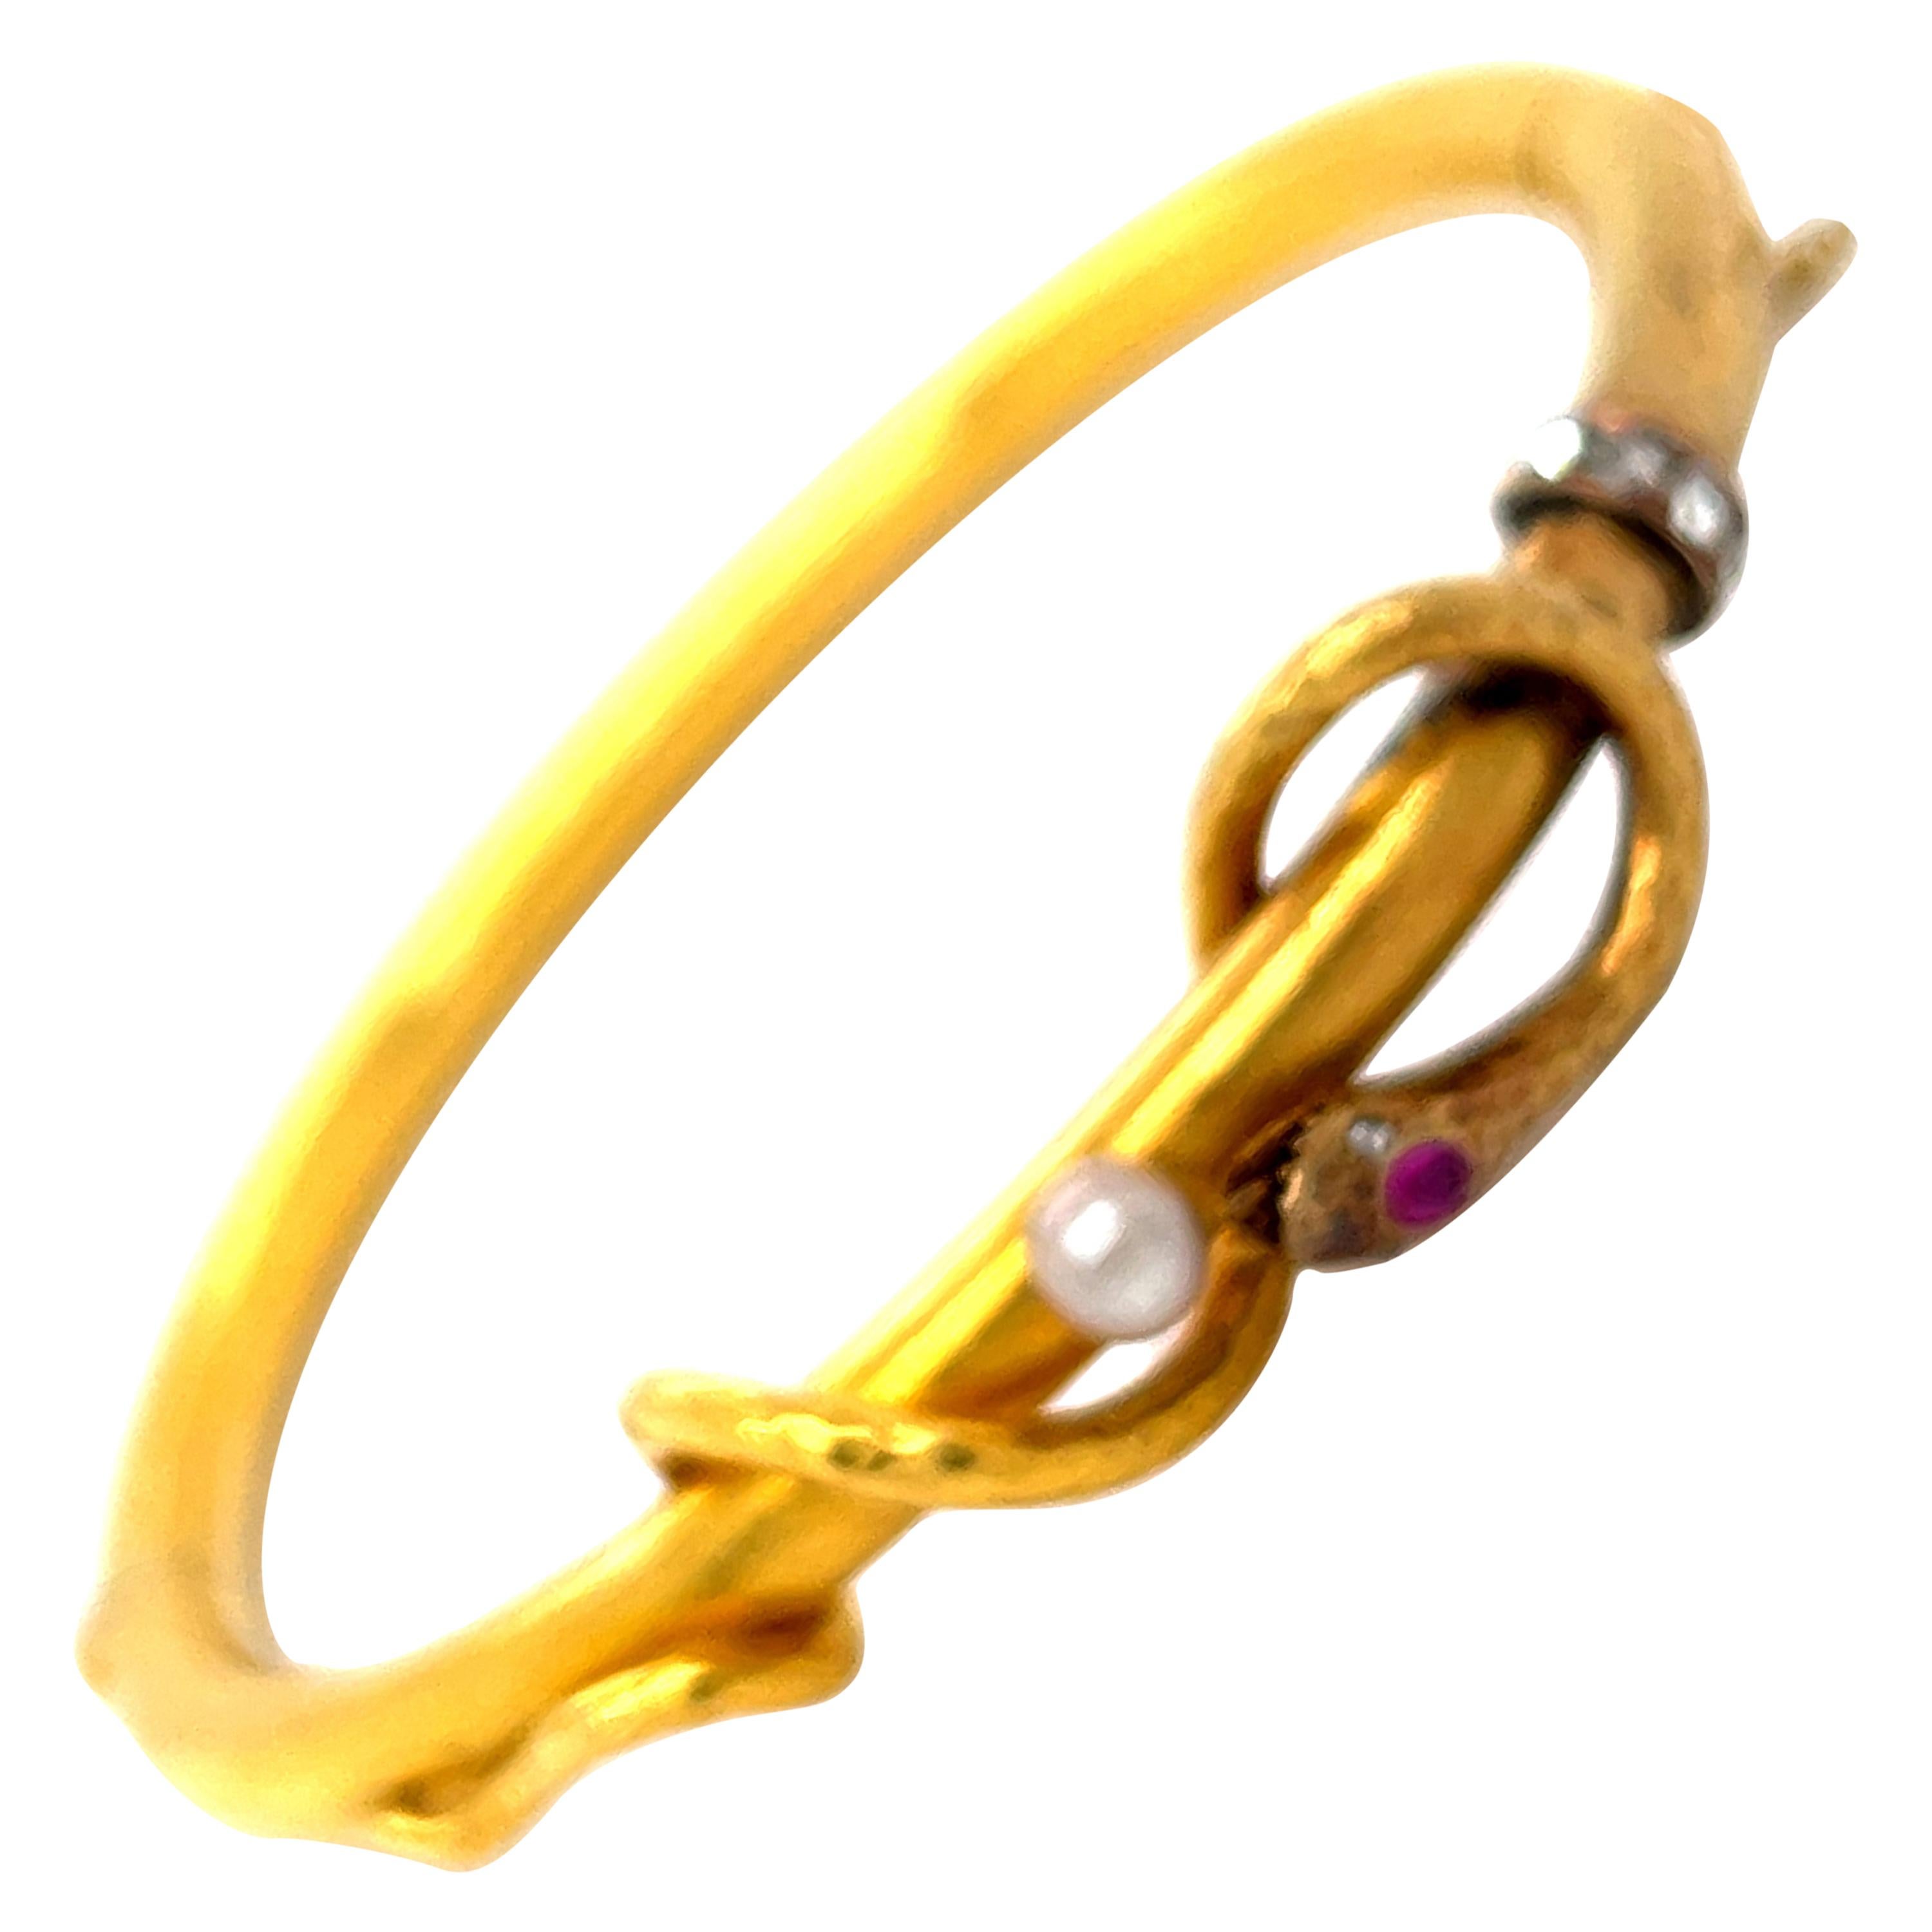 Antique 18 Karat Gold Snake Bangle Bracelet